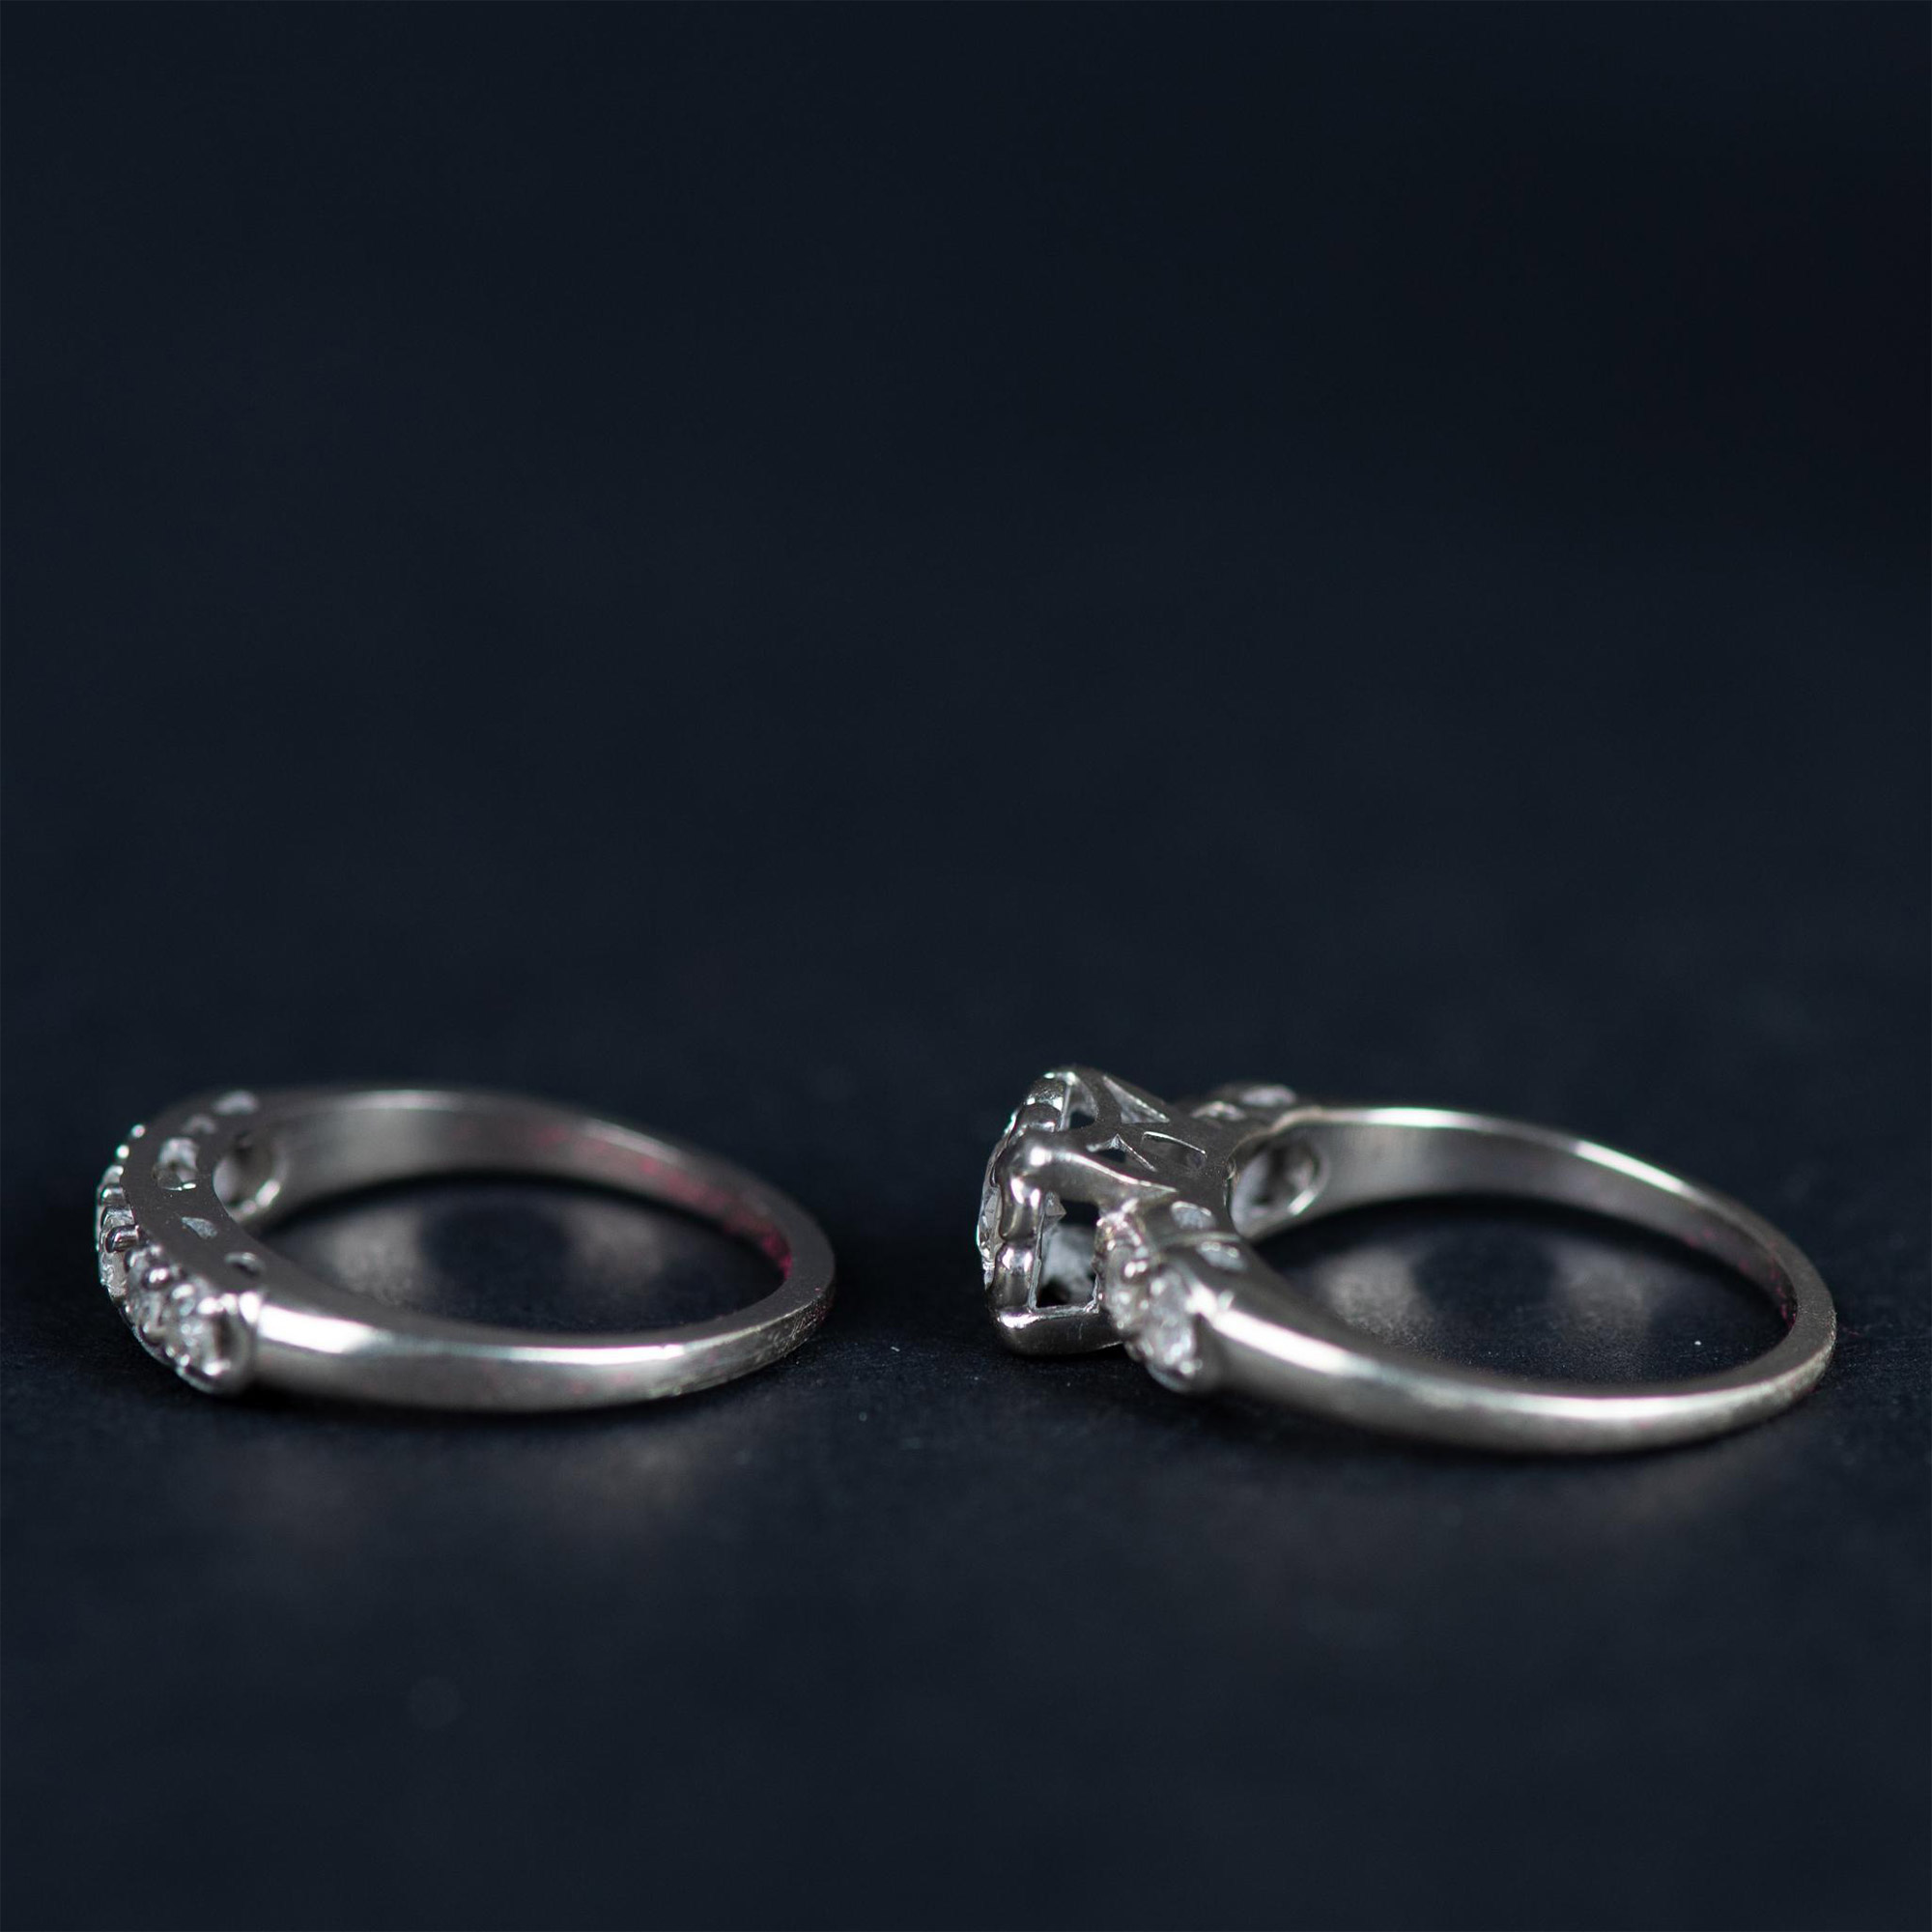 14K White Gold Diamond Engagement Ring & Wedding Band Set - Image 3 of 6